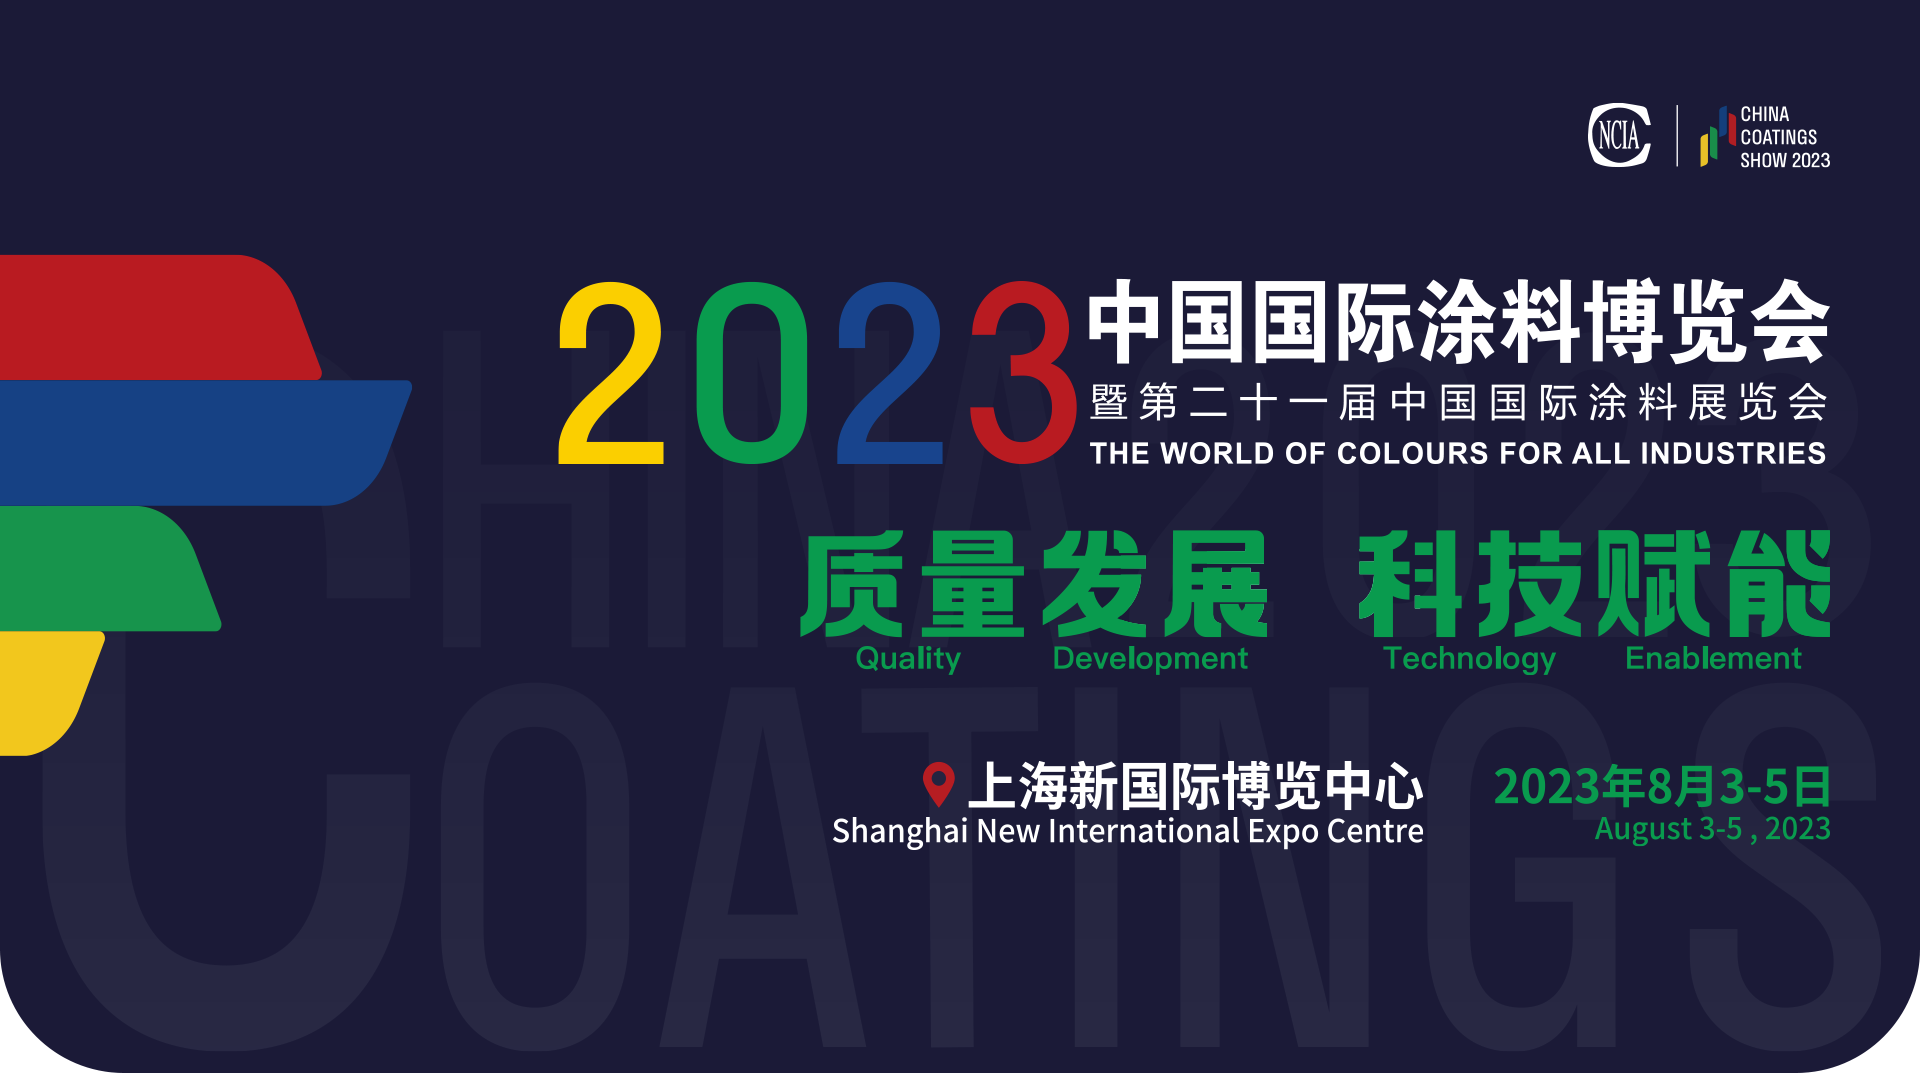 8月3-5日 | 2023中国国际涂料博览会暨第二十一届中国国际涂料展览会